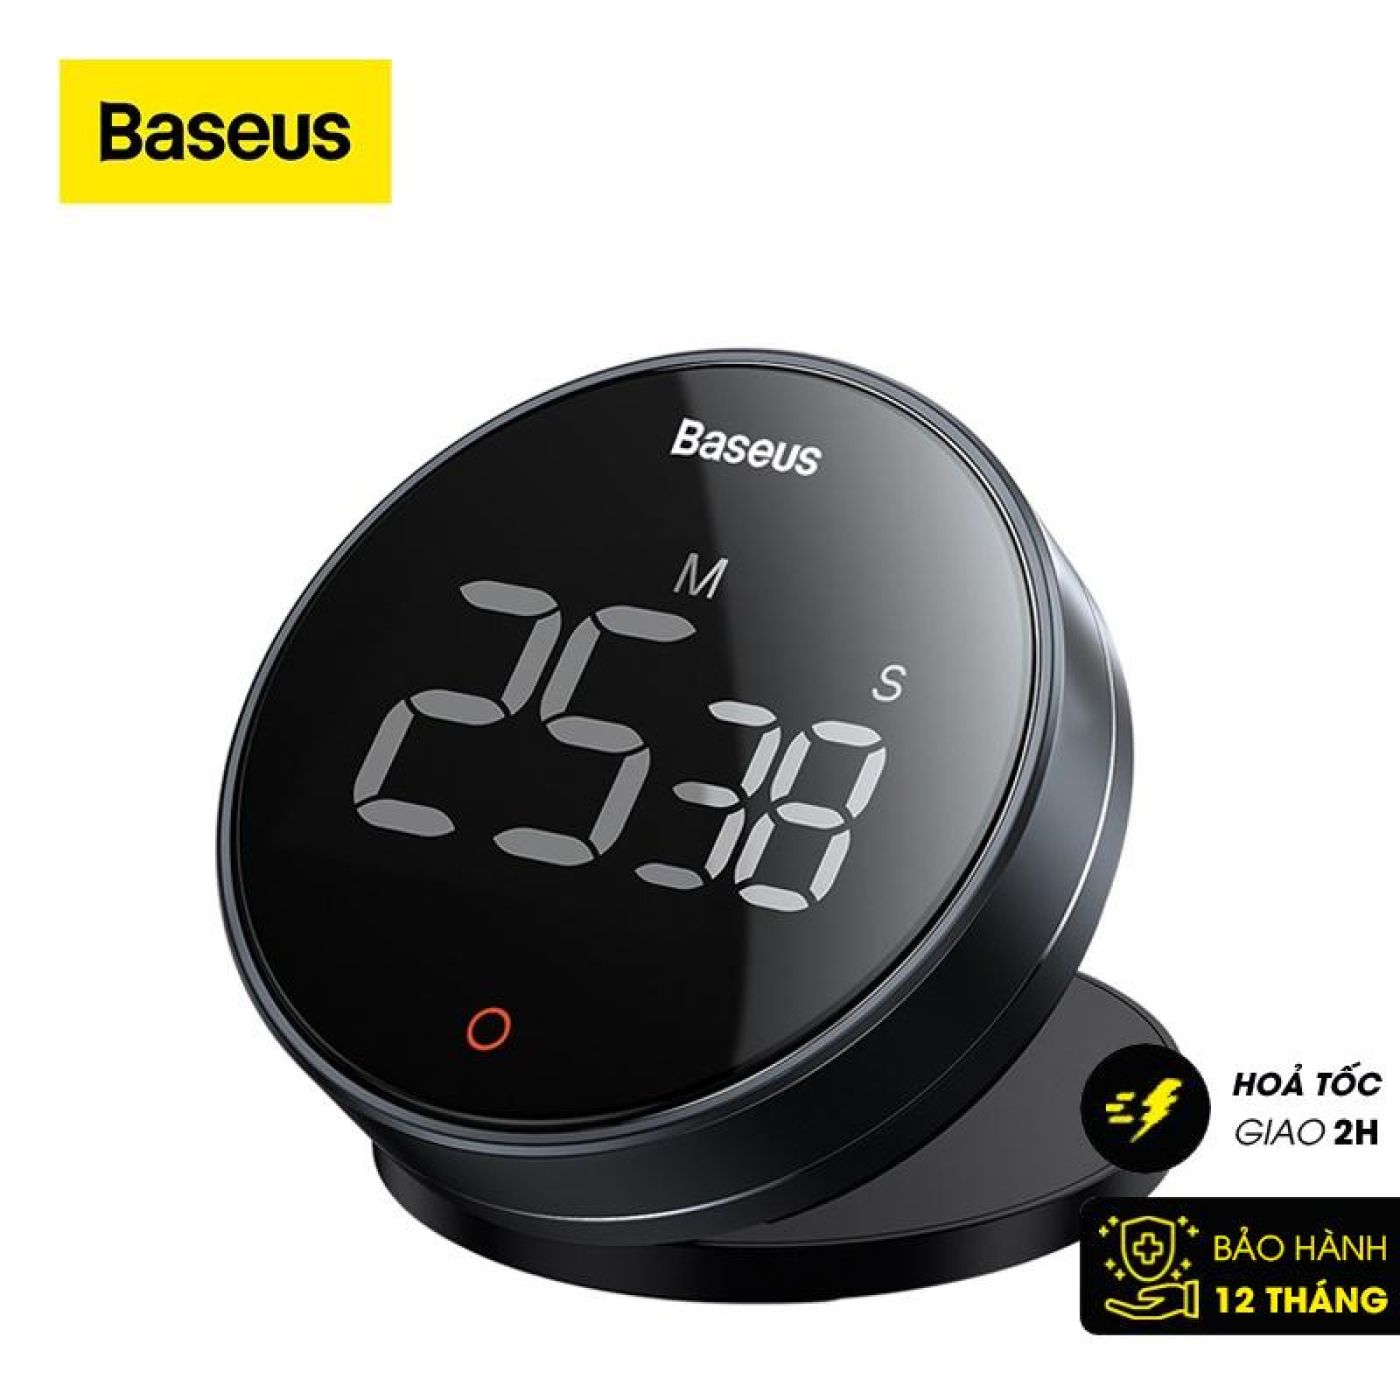 Đồng hộ hẹn giờ đếm ngược Baseus Heyo Rotation LED Countdown Timer